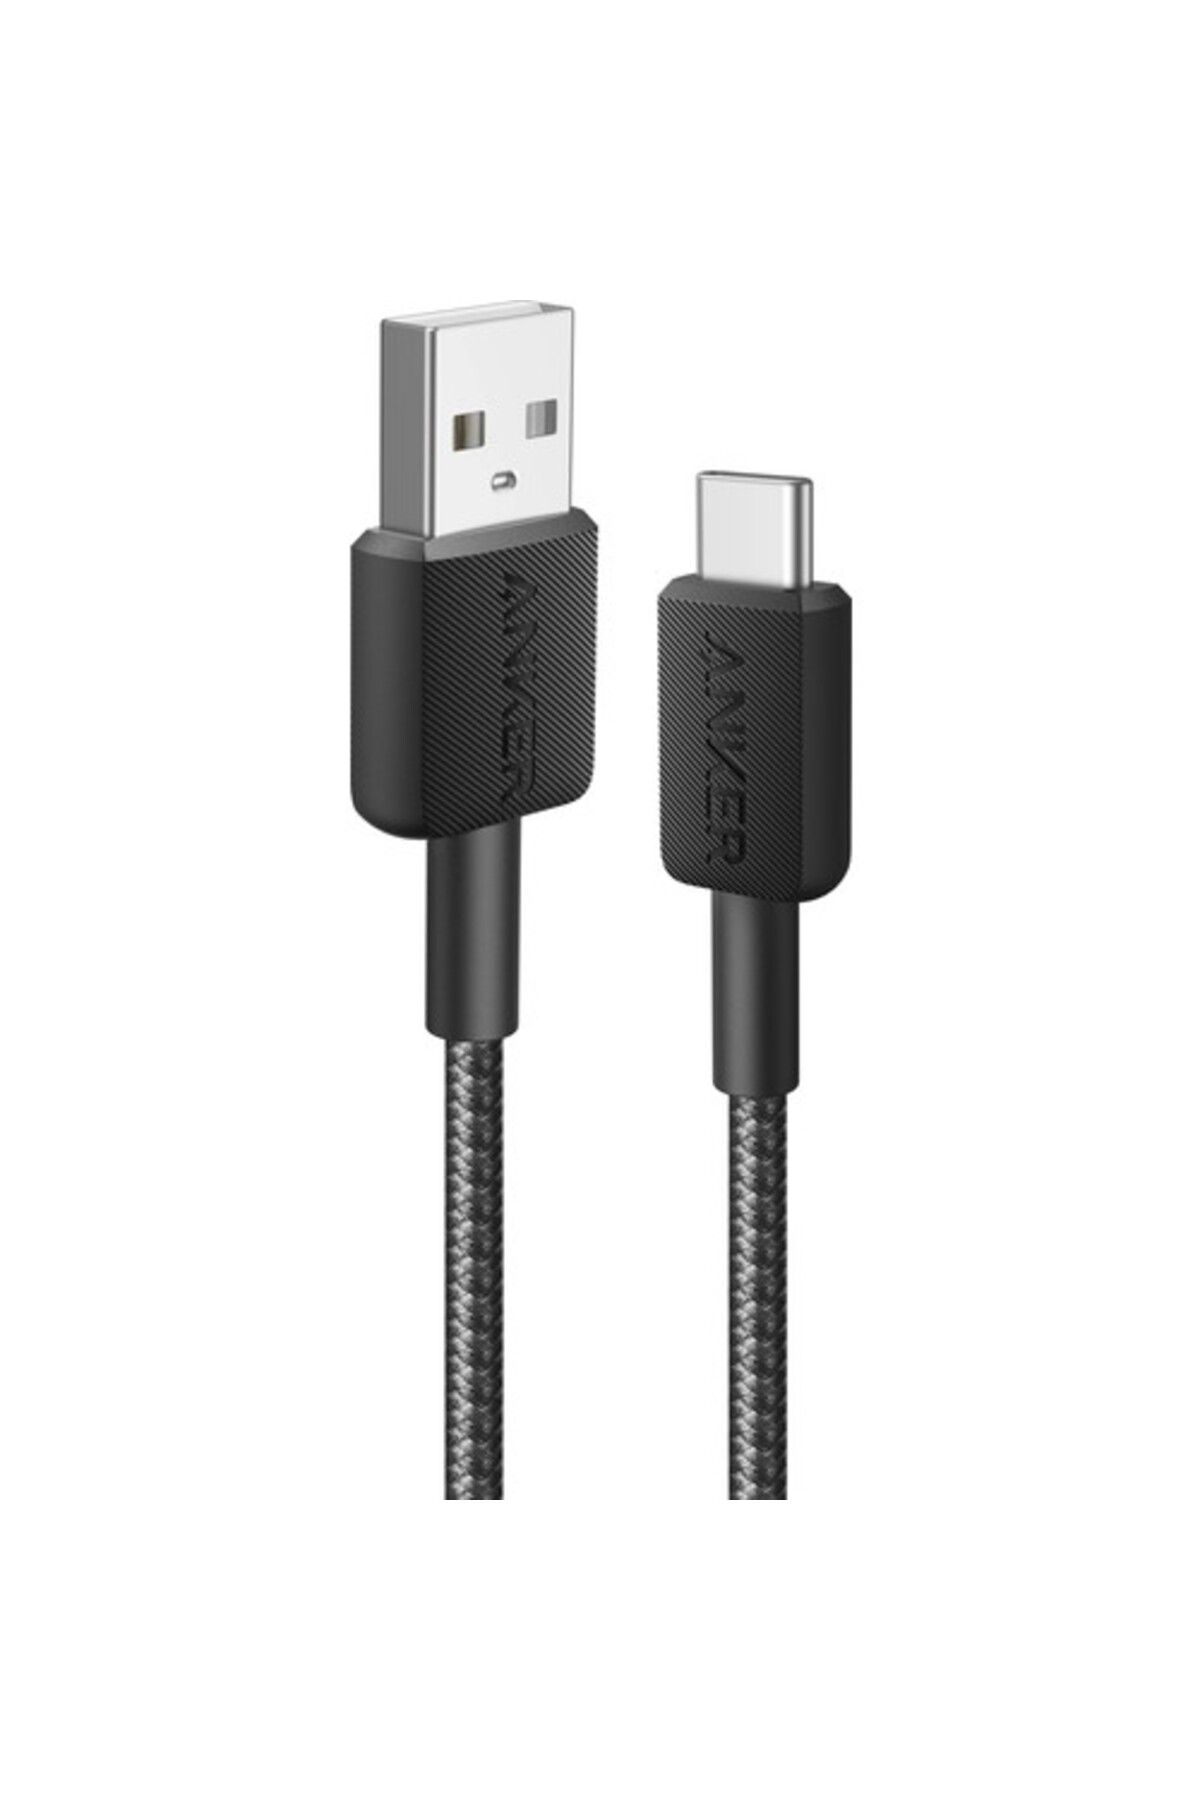 Anker 322 USB-C to USB-A 1.8m Şarj/Data Kablosu - Siyah - 30W Güç Destekli - A81H6